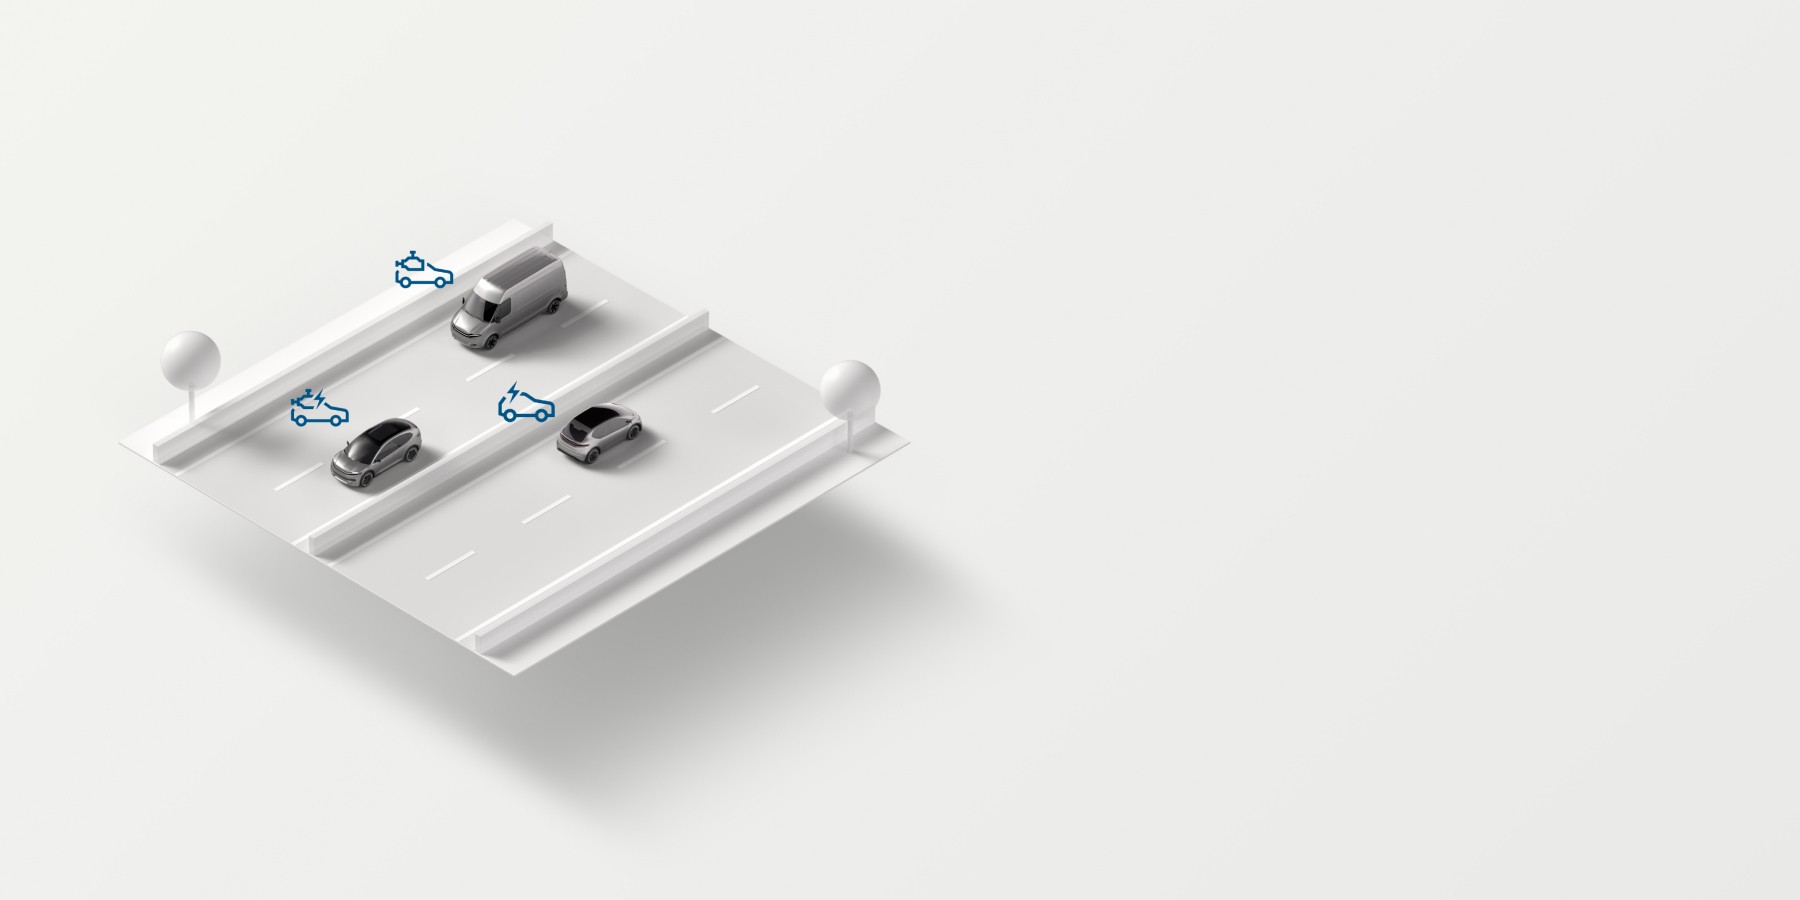 Abstrakte 3D-Visualisierung der Einsatzwecke von Bosch-Lösungen für Pkw und leichte Nutzfahrzeuge.